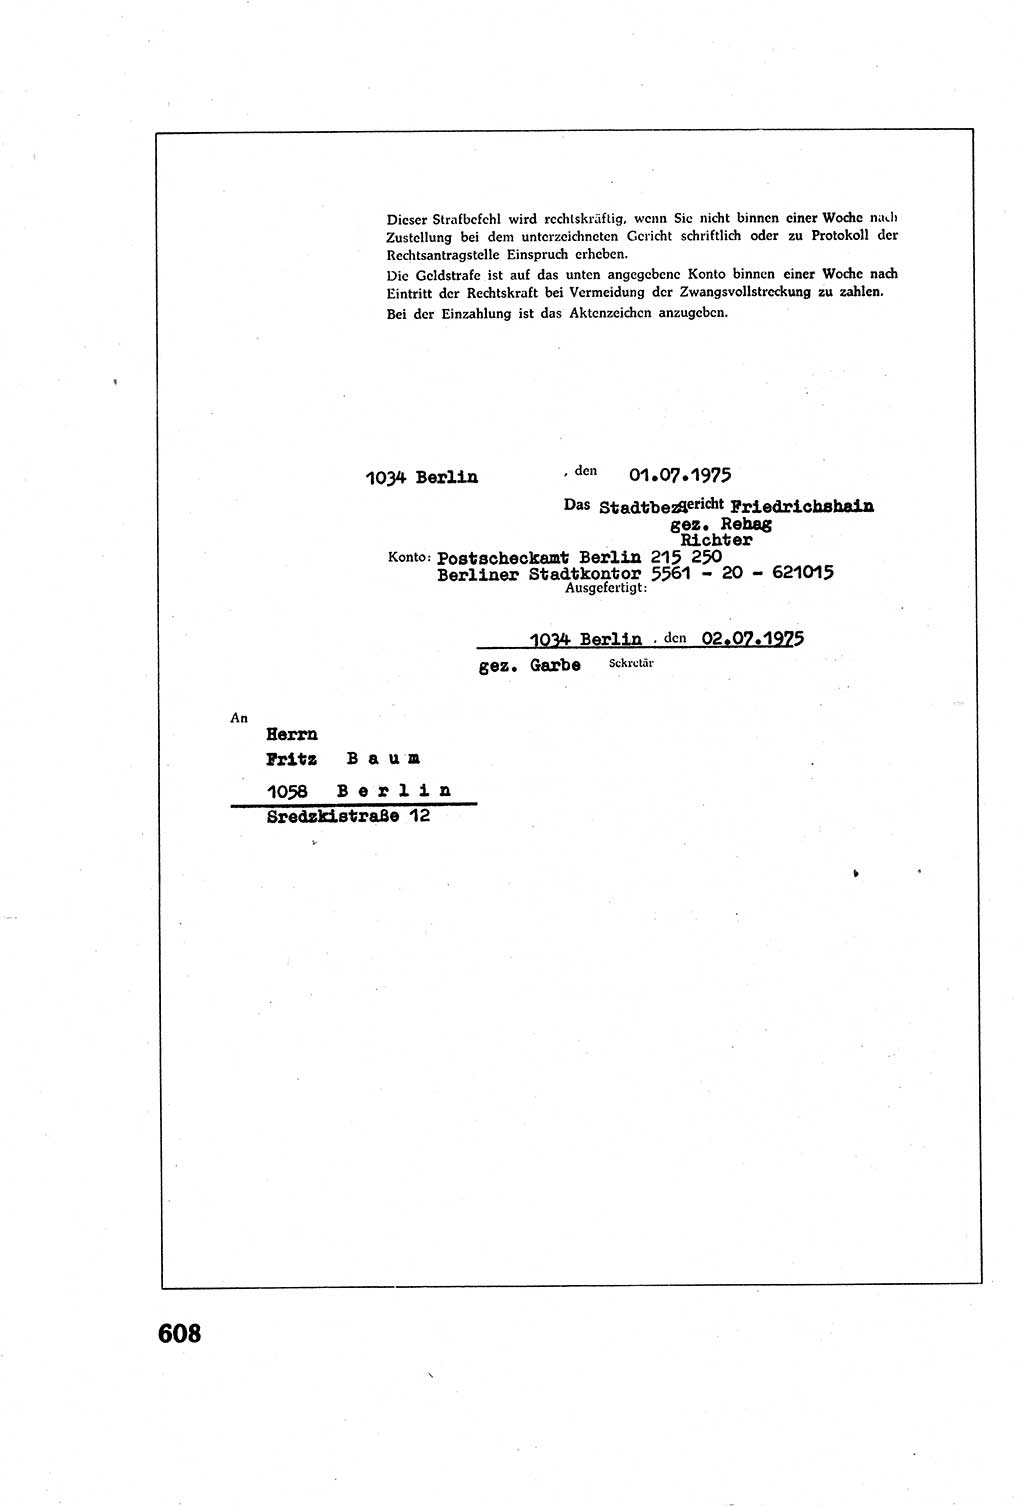 Strafverfahrensrecht [Deutsche Demokratische Republik (DDR)], Lehrbuch 1977, Seite 608 (Strafverf.-R. DDR Lb. 1977, S. 608)